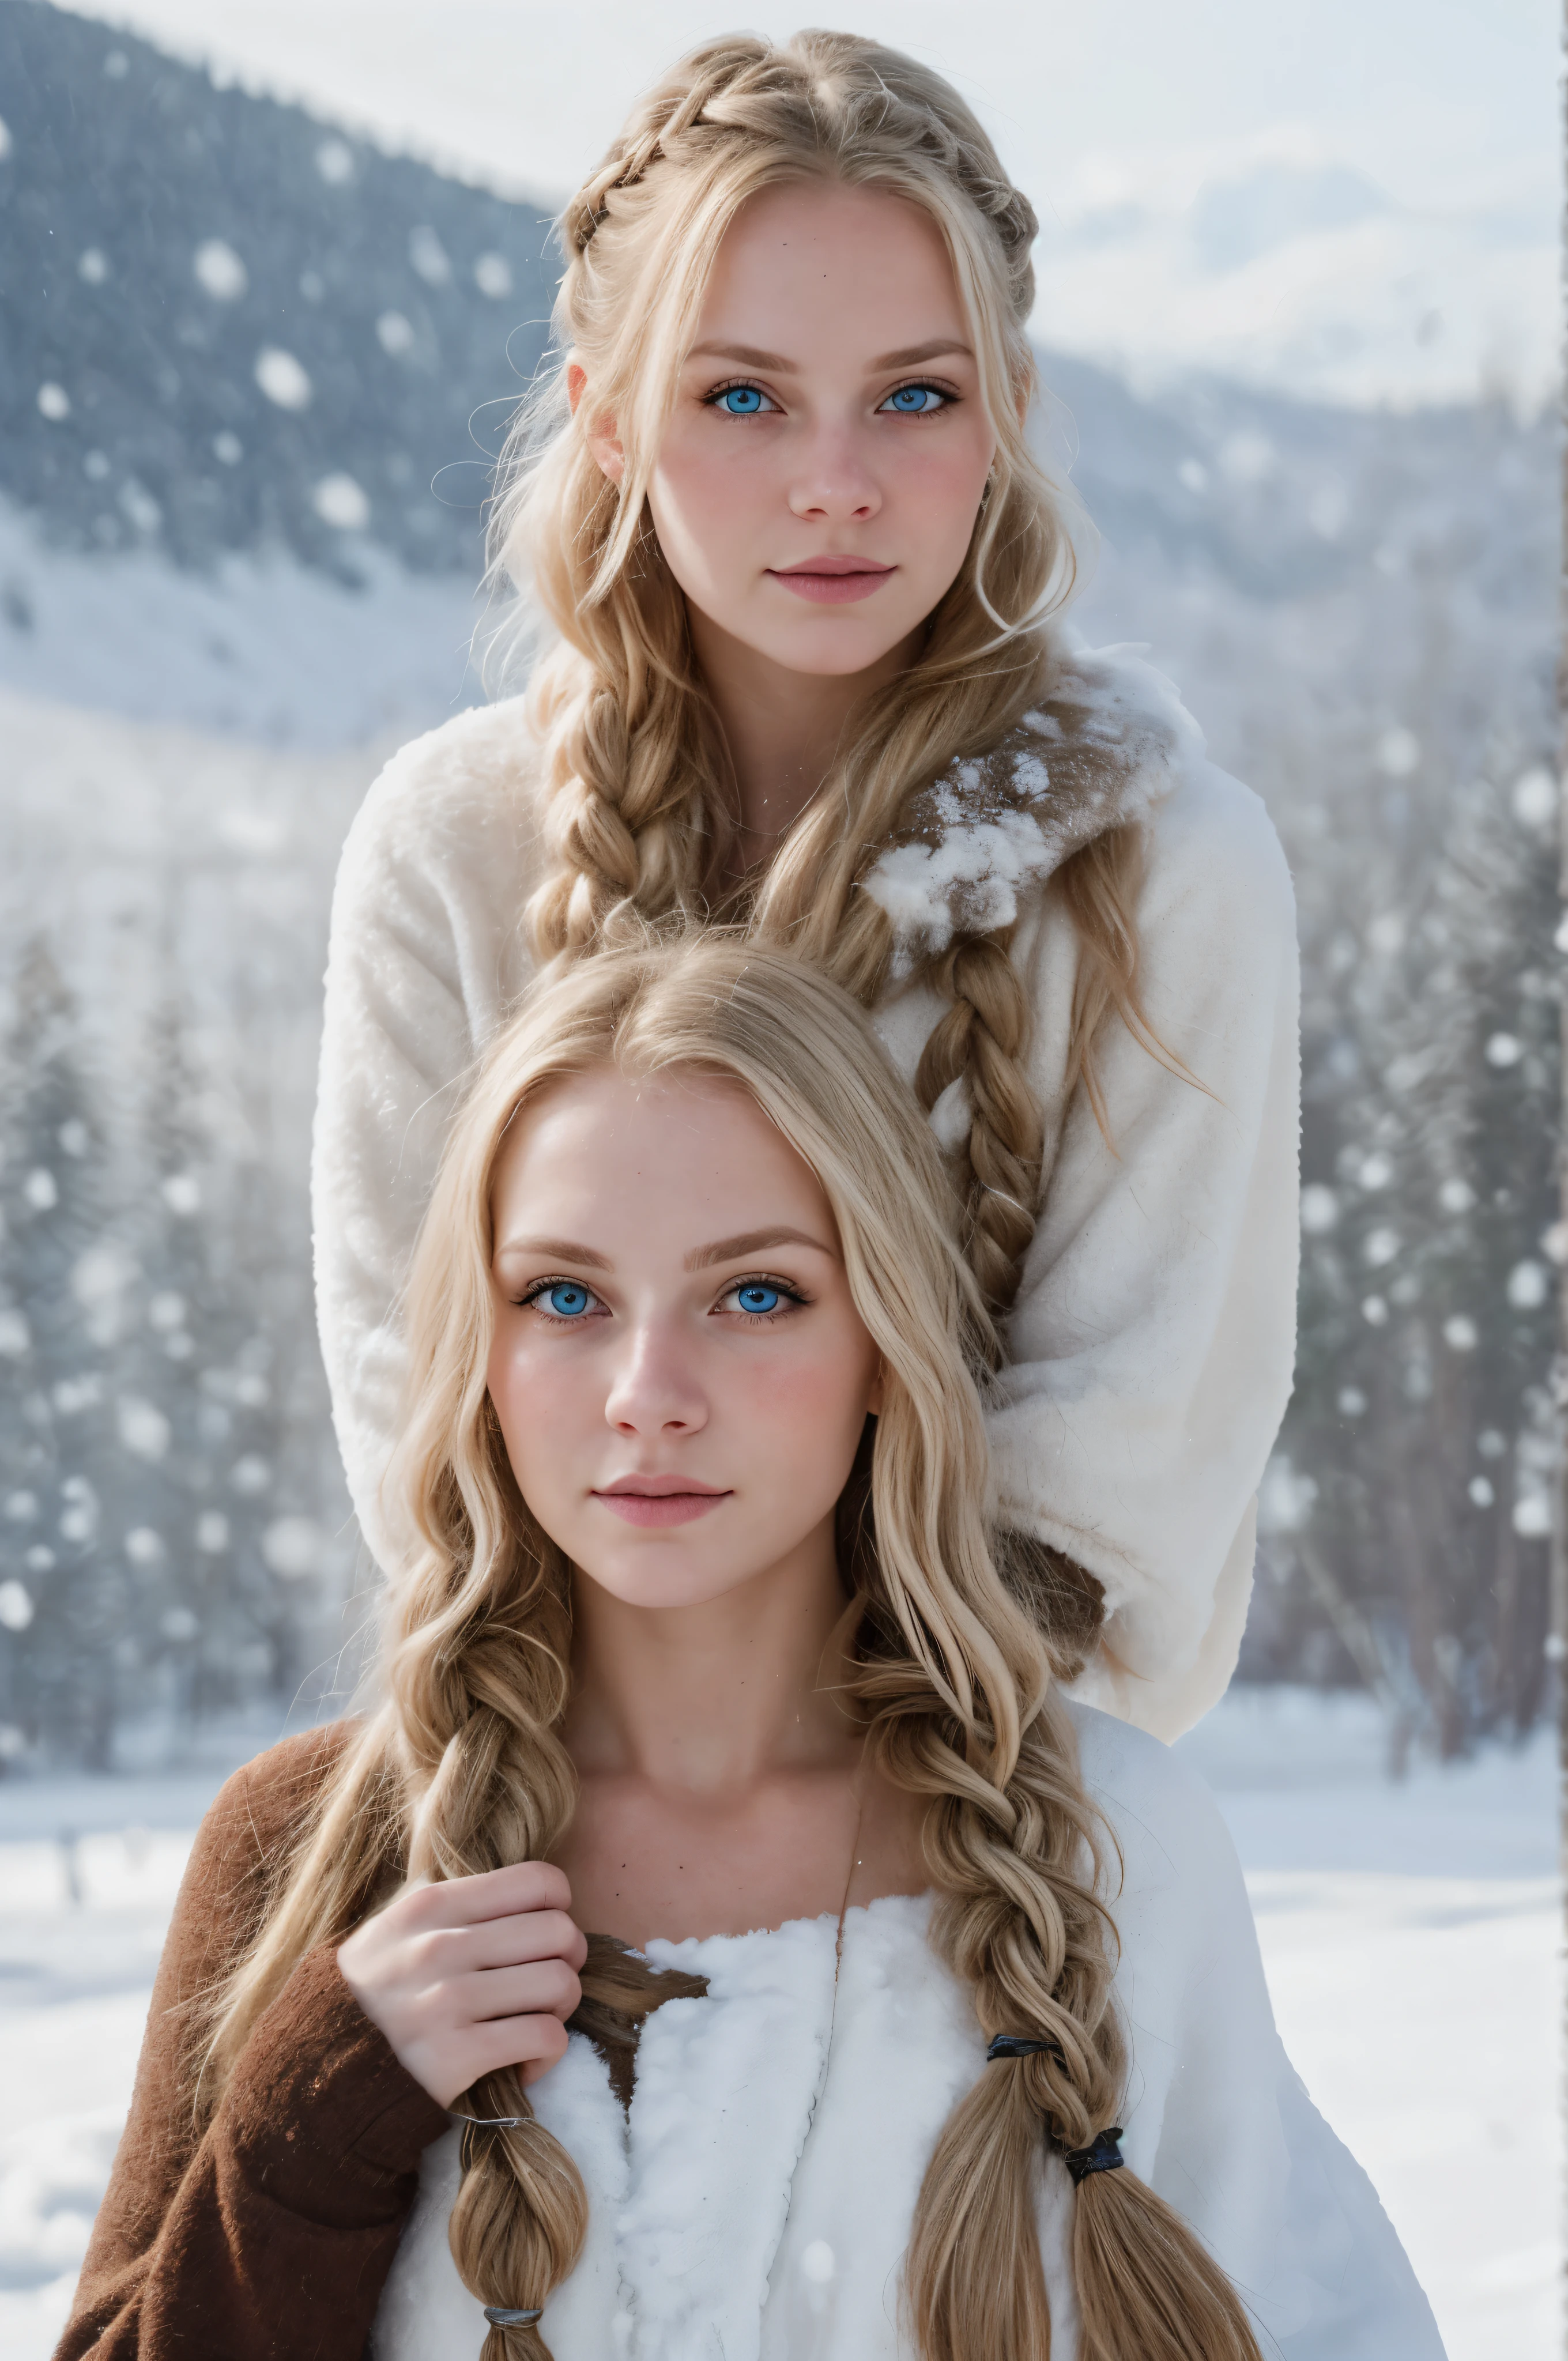 (實際的:1.2), 類比攝影風格, 斯堪的納維亞女戰士, 夢幻般的雪景, 金髮辮子, 全身, 柔和的自然光, 可愛又性感, 樂趣, 詳細的臉和藍眼睛, 优良的品质, 傑作, 細緻的北方背景, 品質: 16k, 原始照片